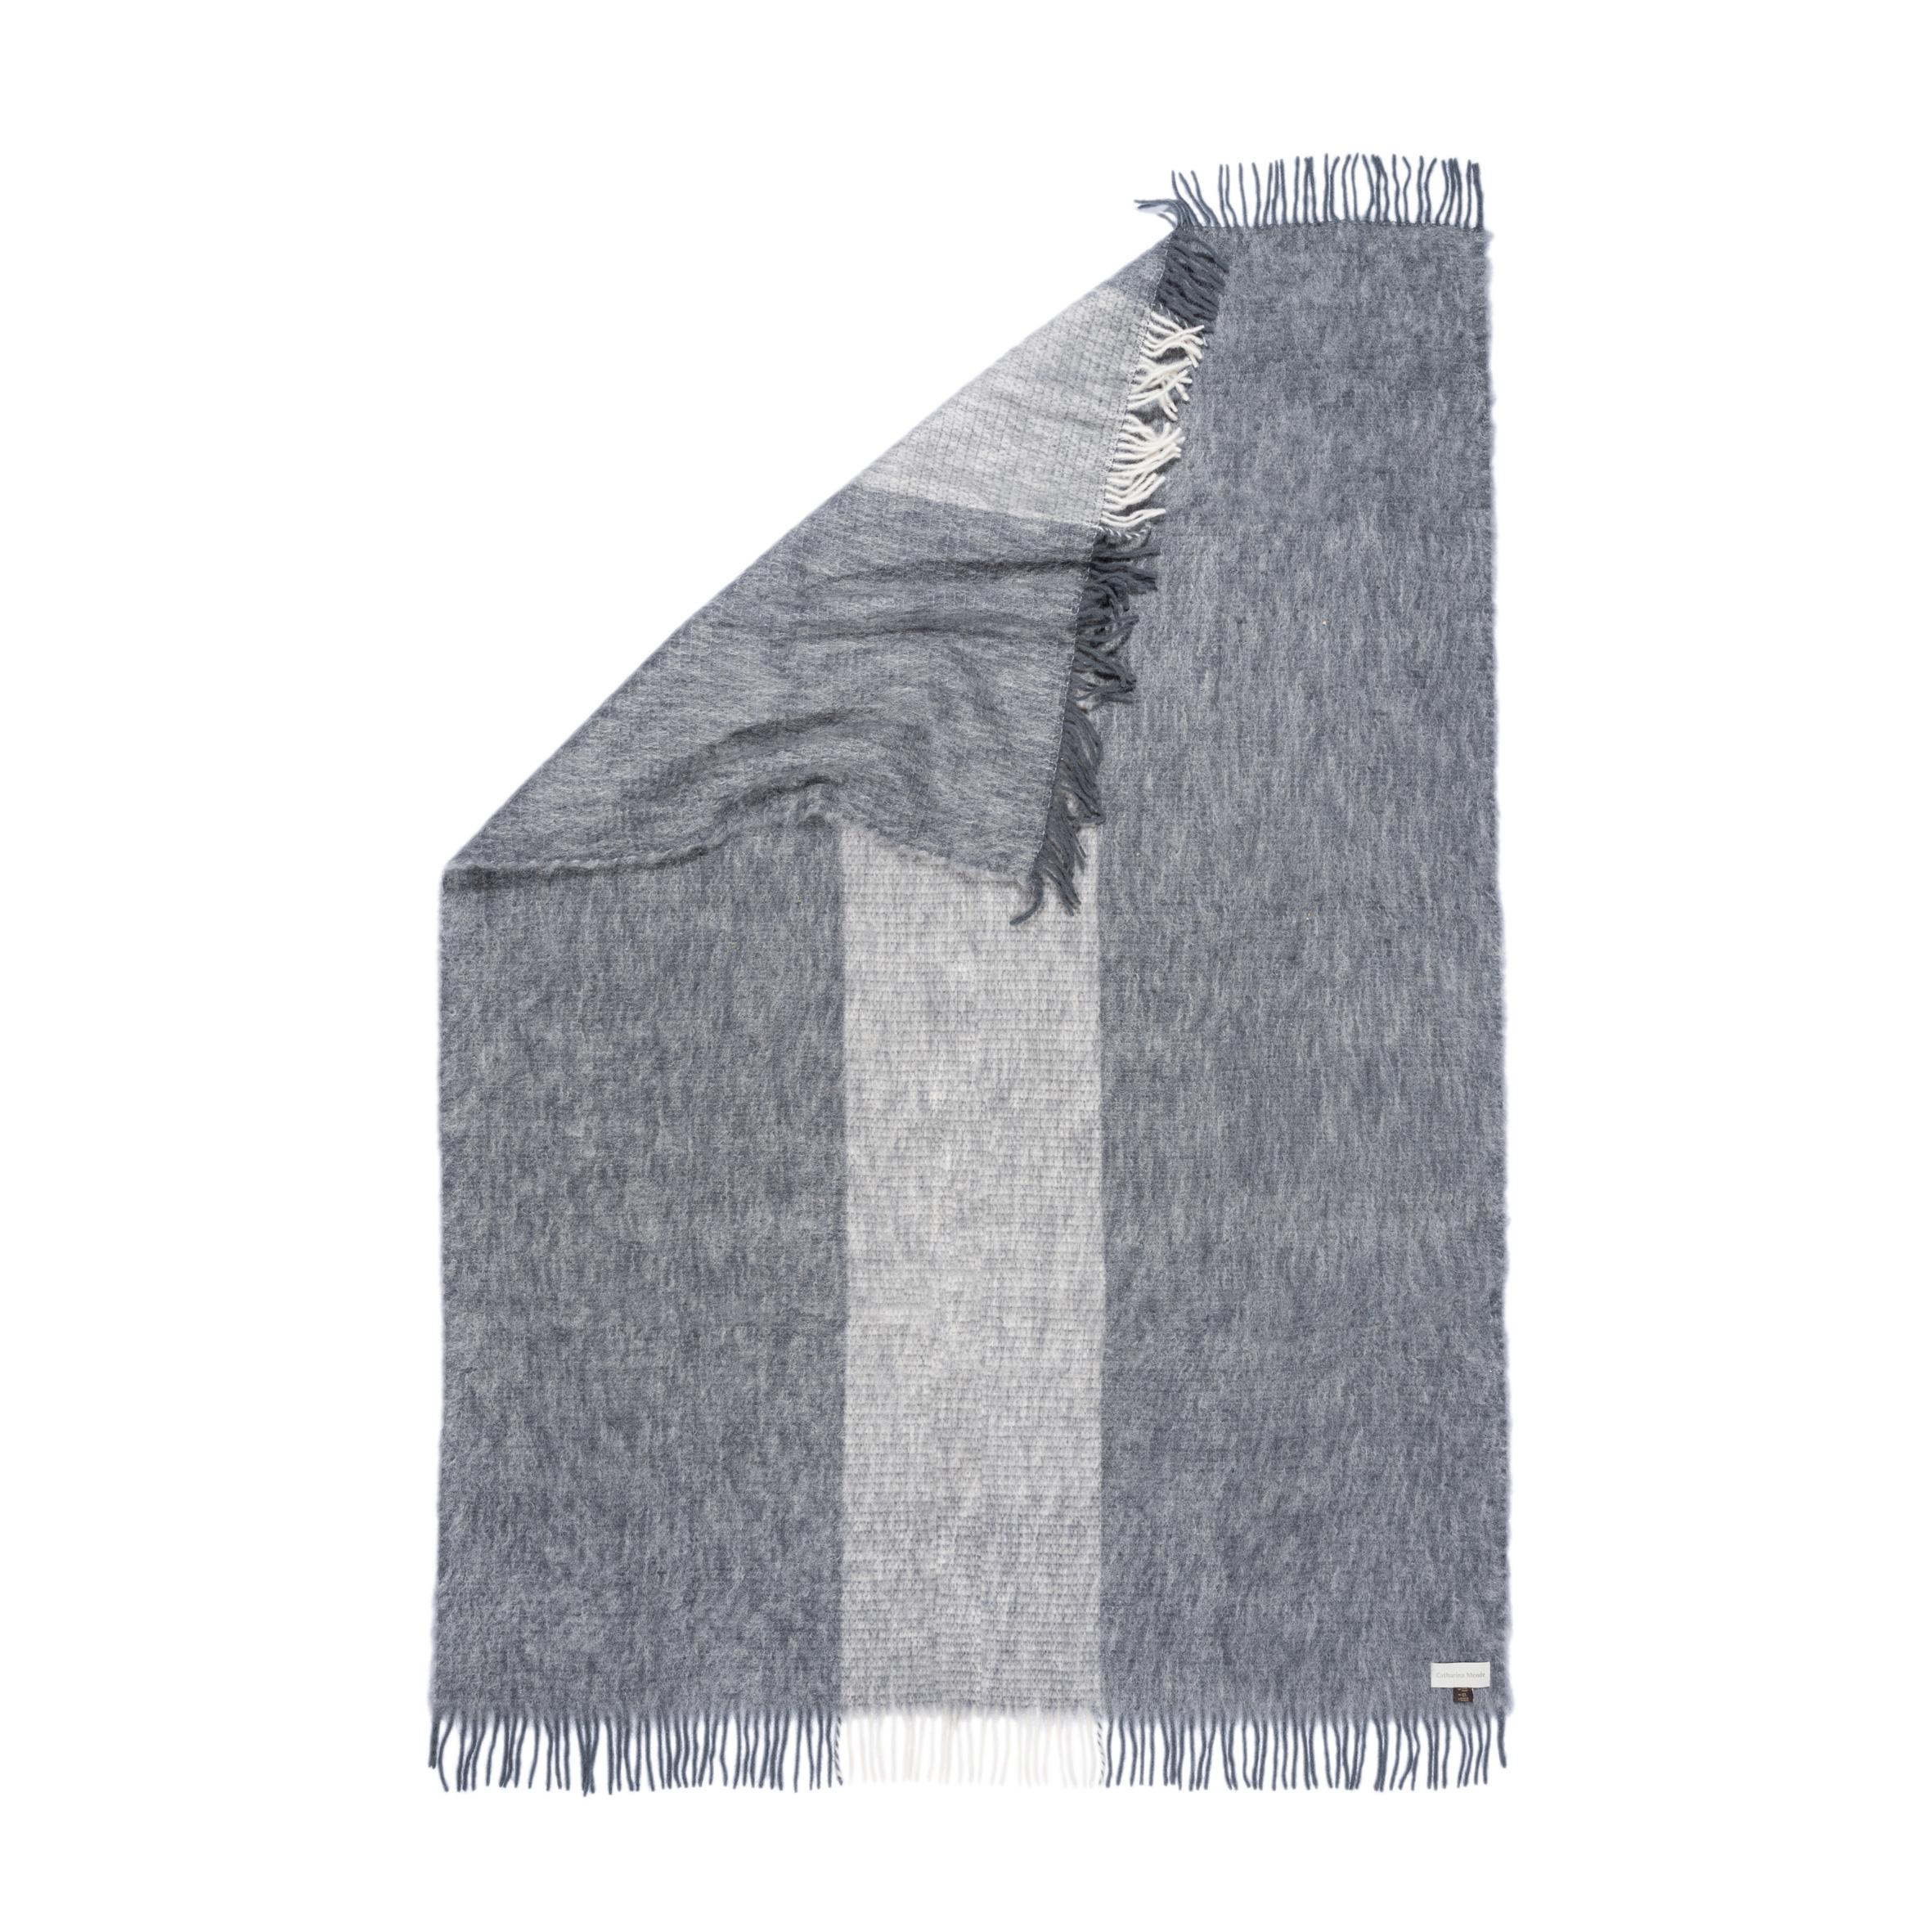 Entworfen in Berlin von Catharina Mende, gewebt aus 50% Mohair, 48% Wolle, 2% Polyamid in Spanien: Diese graue schmeichelnde und wärmende flauschige Mohairdecke ist der perfekte Begleiter für jede Jahreszeit - ein unverzichtbares Lieblingsstück für